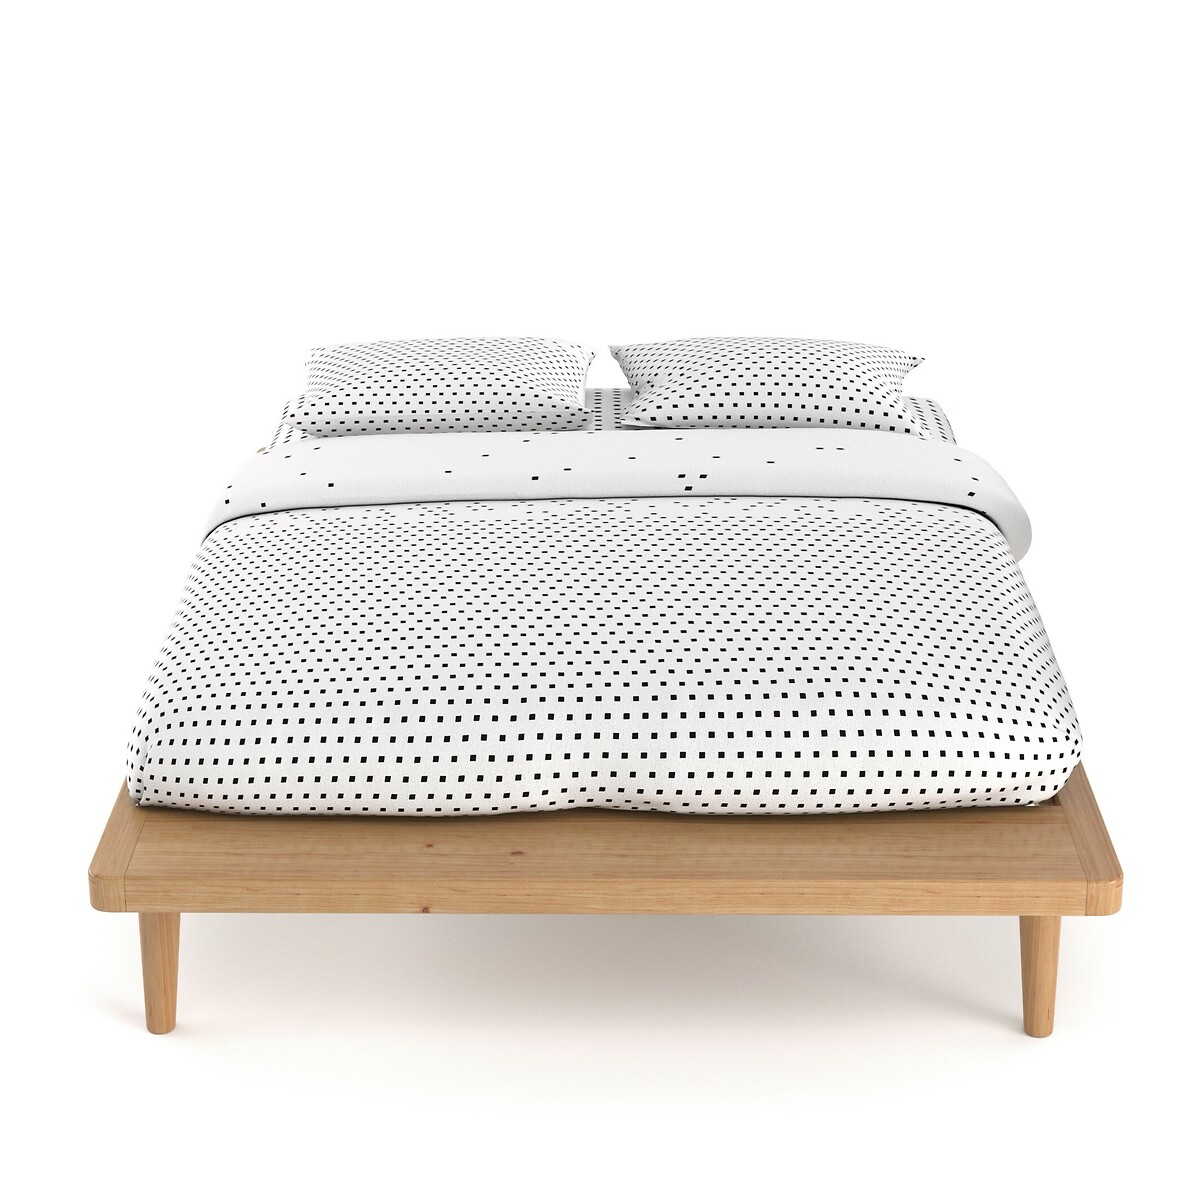 Кровать La Redoute С платформой из массива сосны  кроватное основание Jimi 160 x 200 см каштановый, размер 160 x 200 см - фото 2